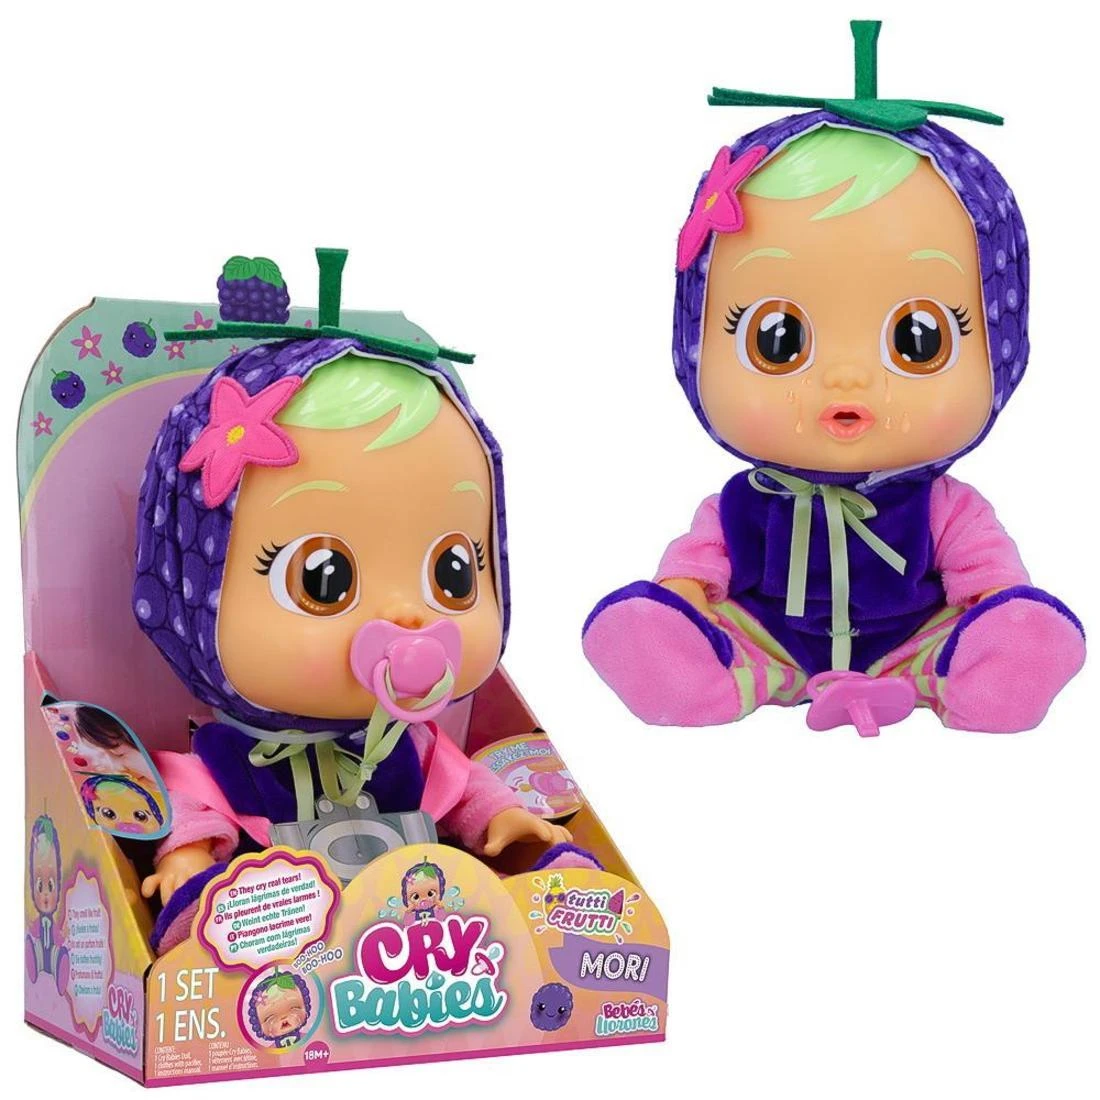 Кукла IMC Toys Cry Babies Плачущий младенец, Mori 31 см.